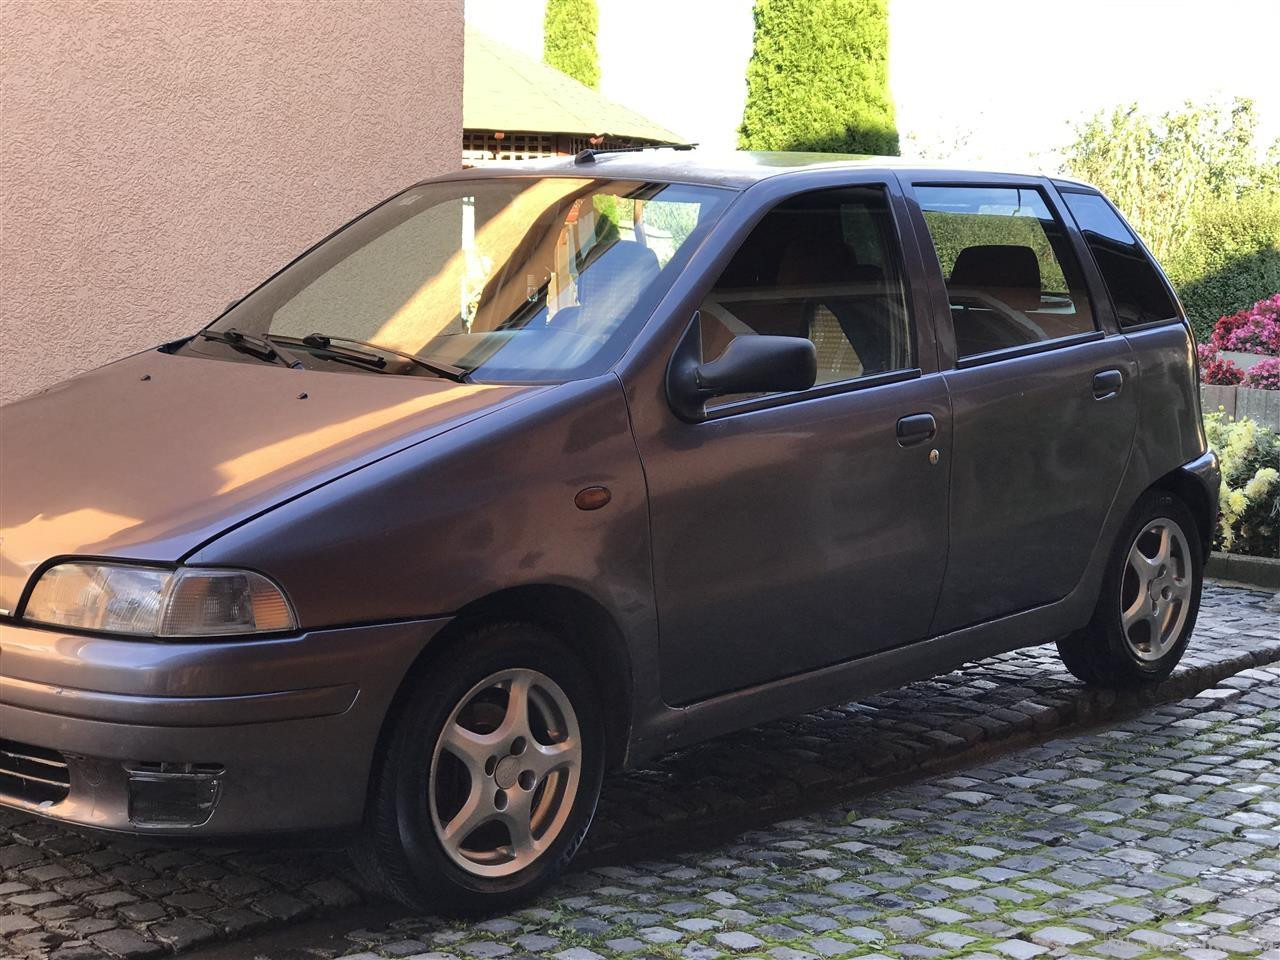 Ofrohet për shitje vetura Fiat Punto 1.7 TD